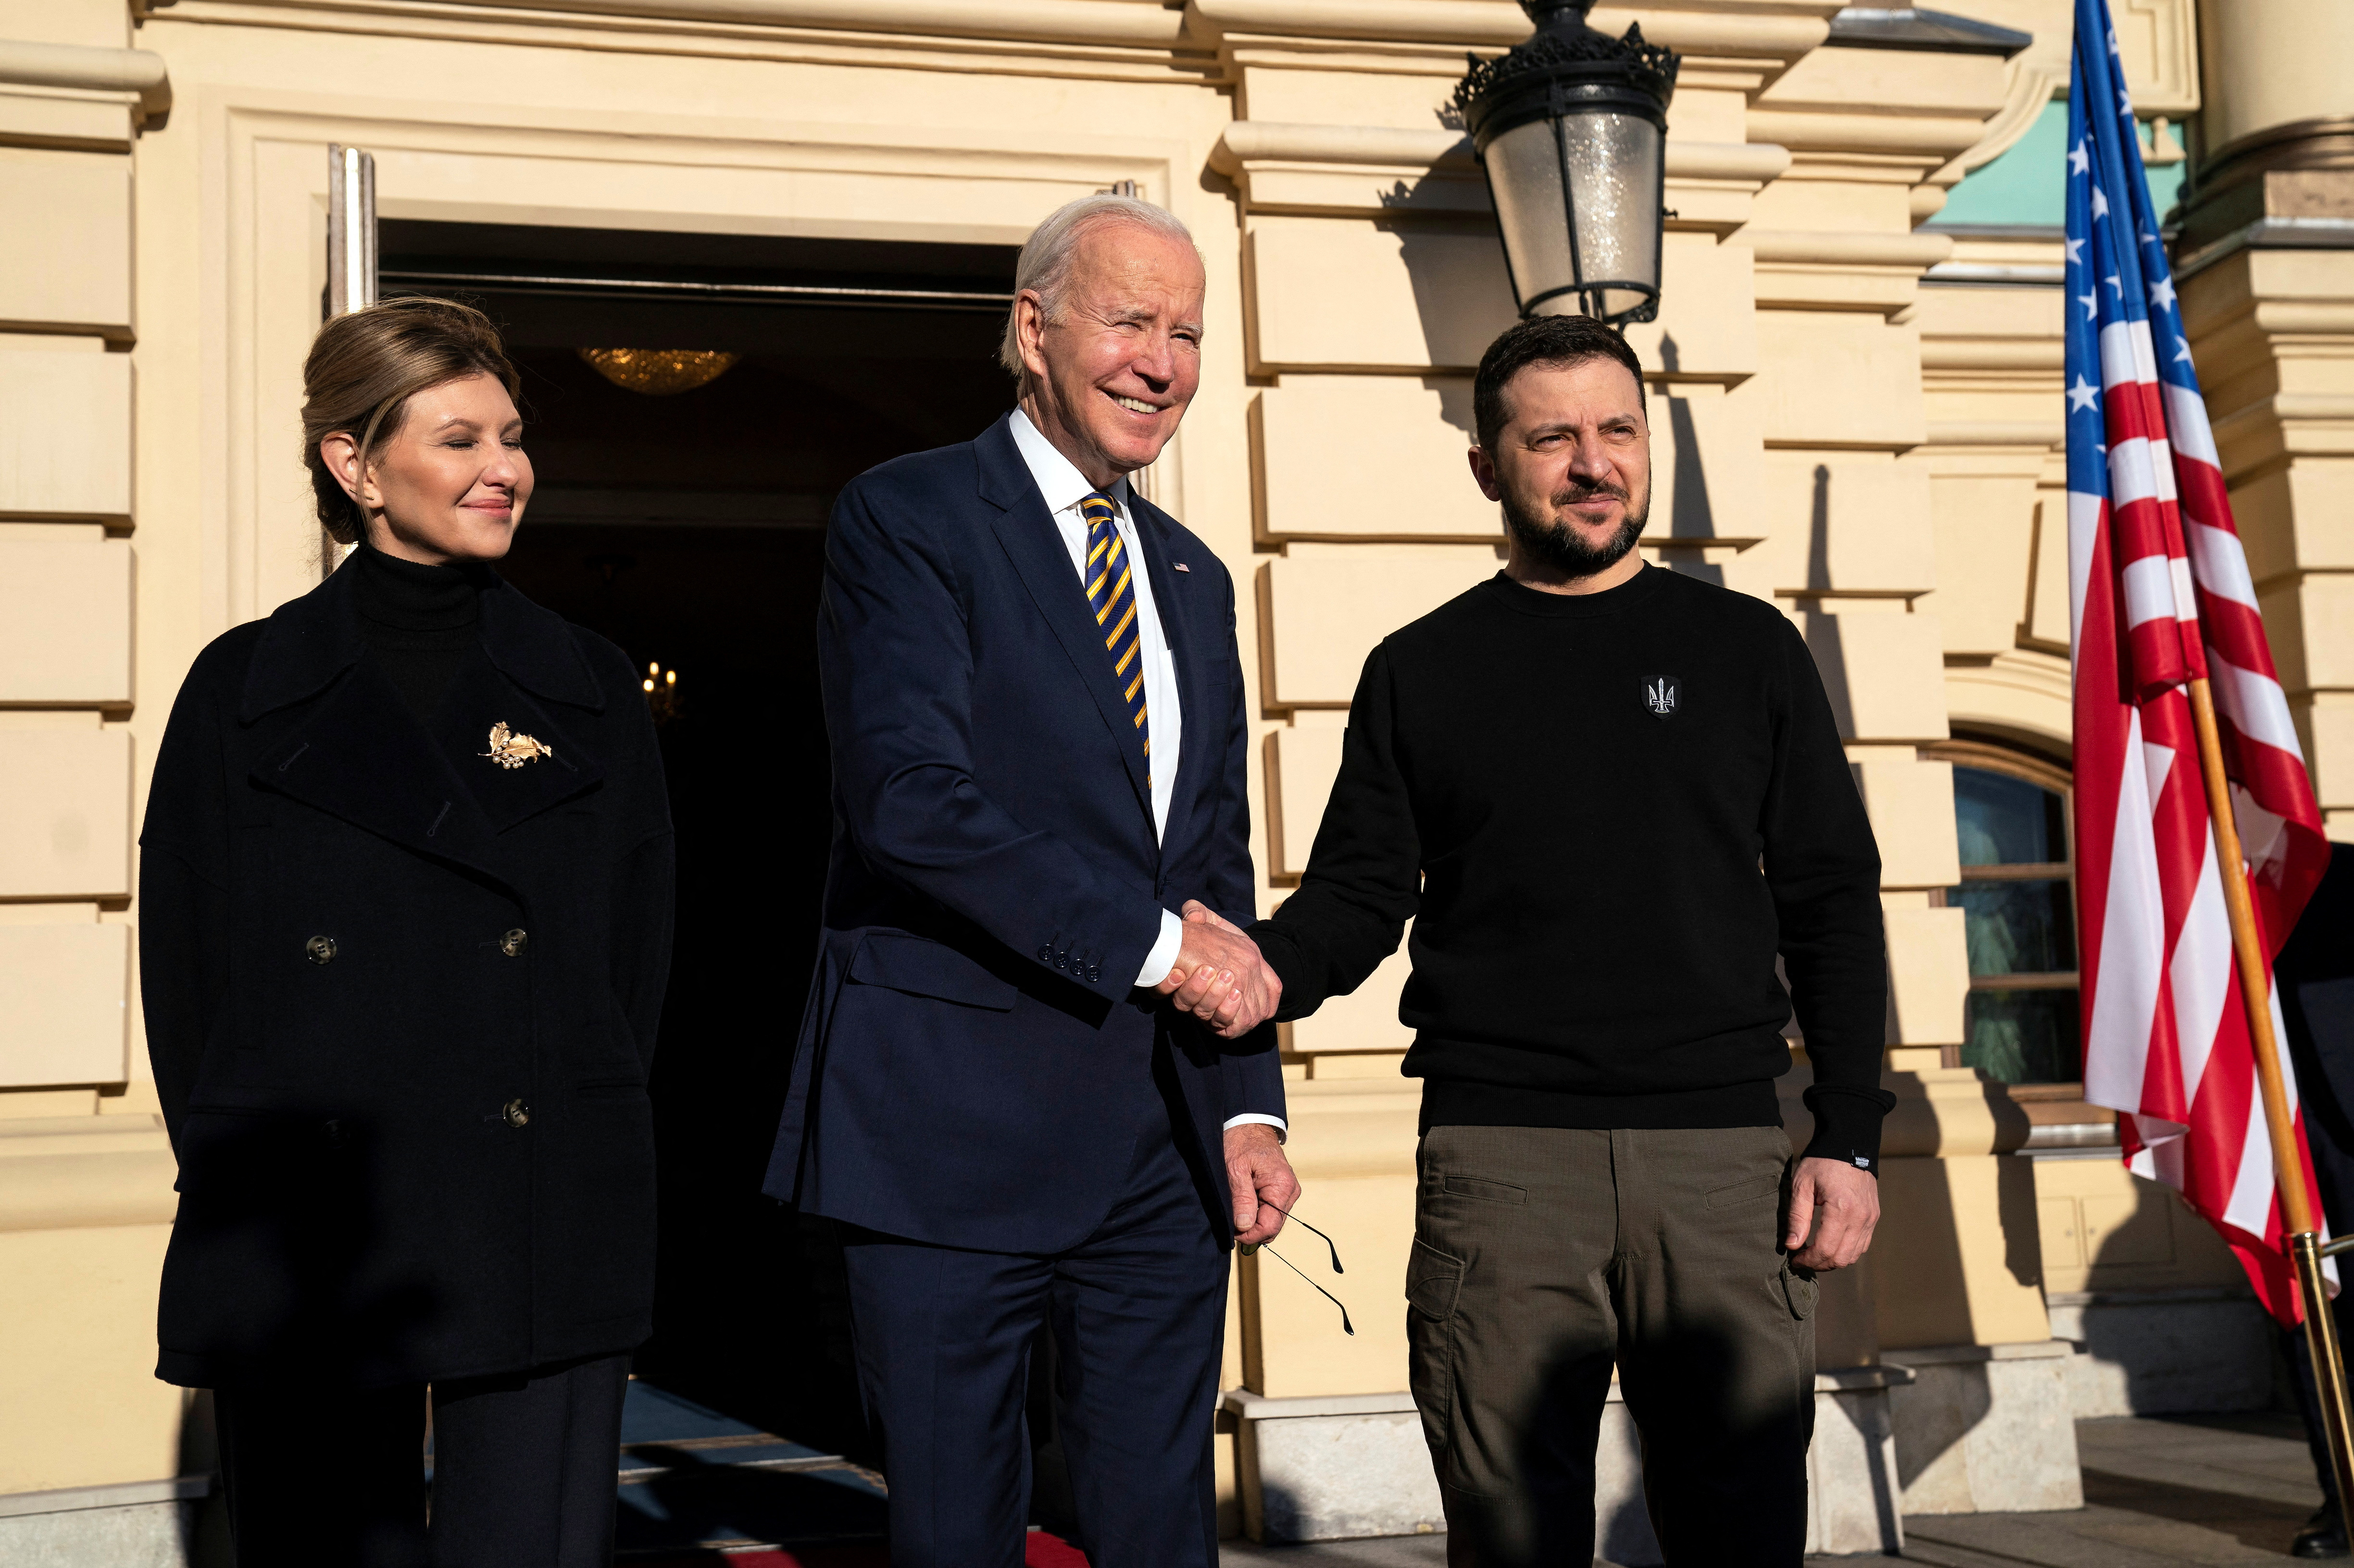 “Joseph Biden, ¡bienvenido a Kiev! Su visita es una importantísima señal de apoyo para todos los ucranianos”, dijo el mandatario ucraniano en Telegram en inglés.
